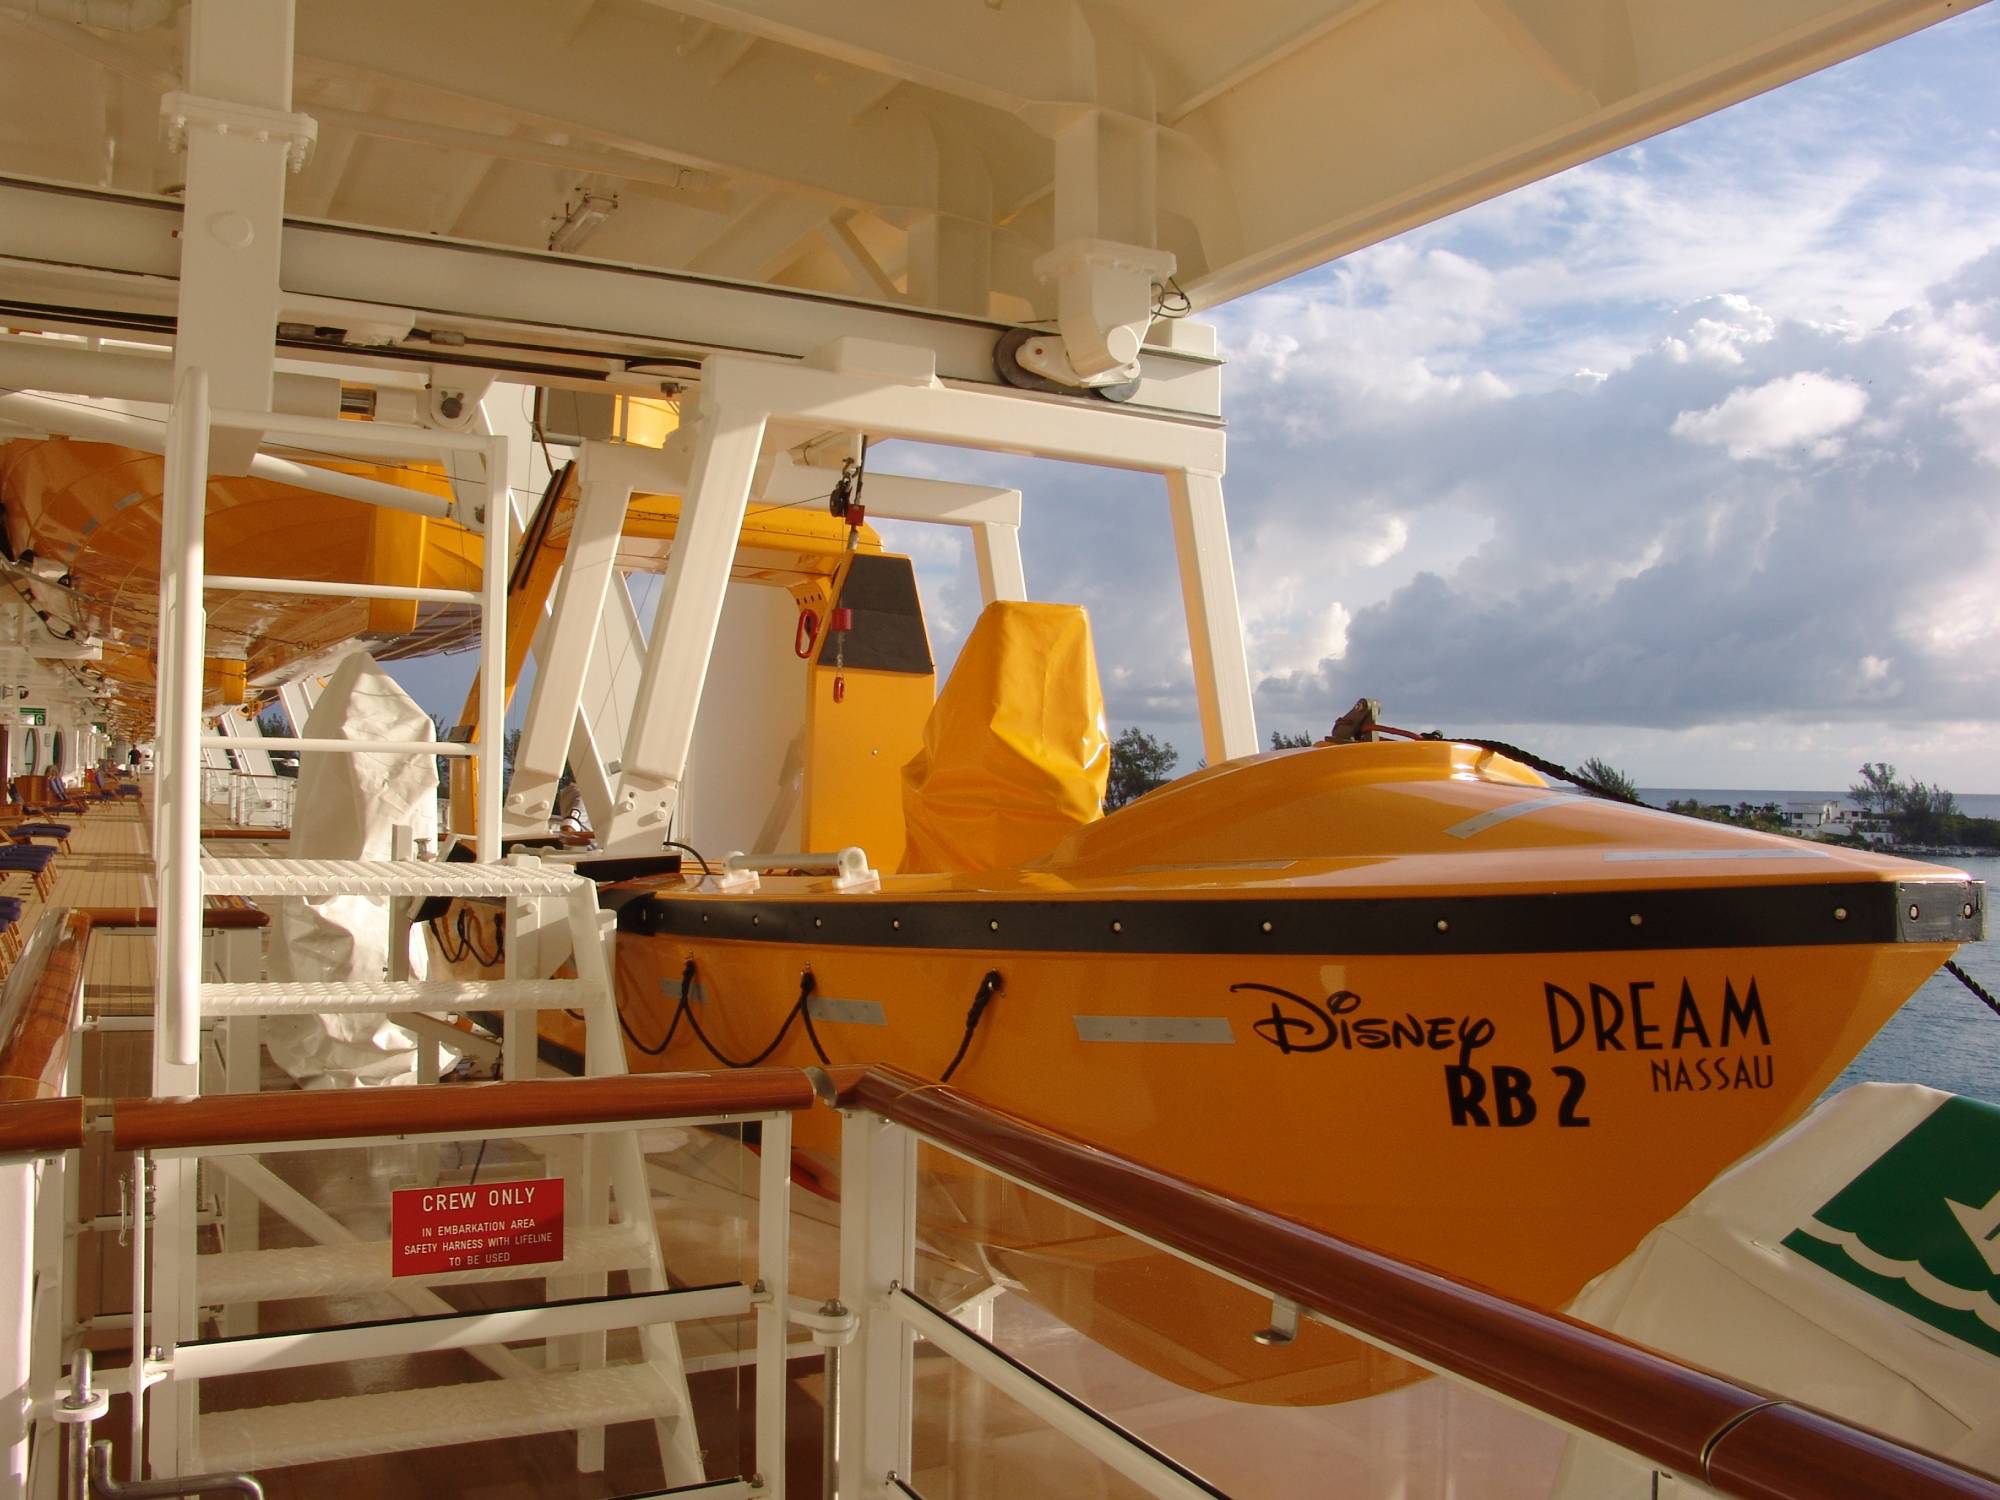 Disney Dream - lifeboat